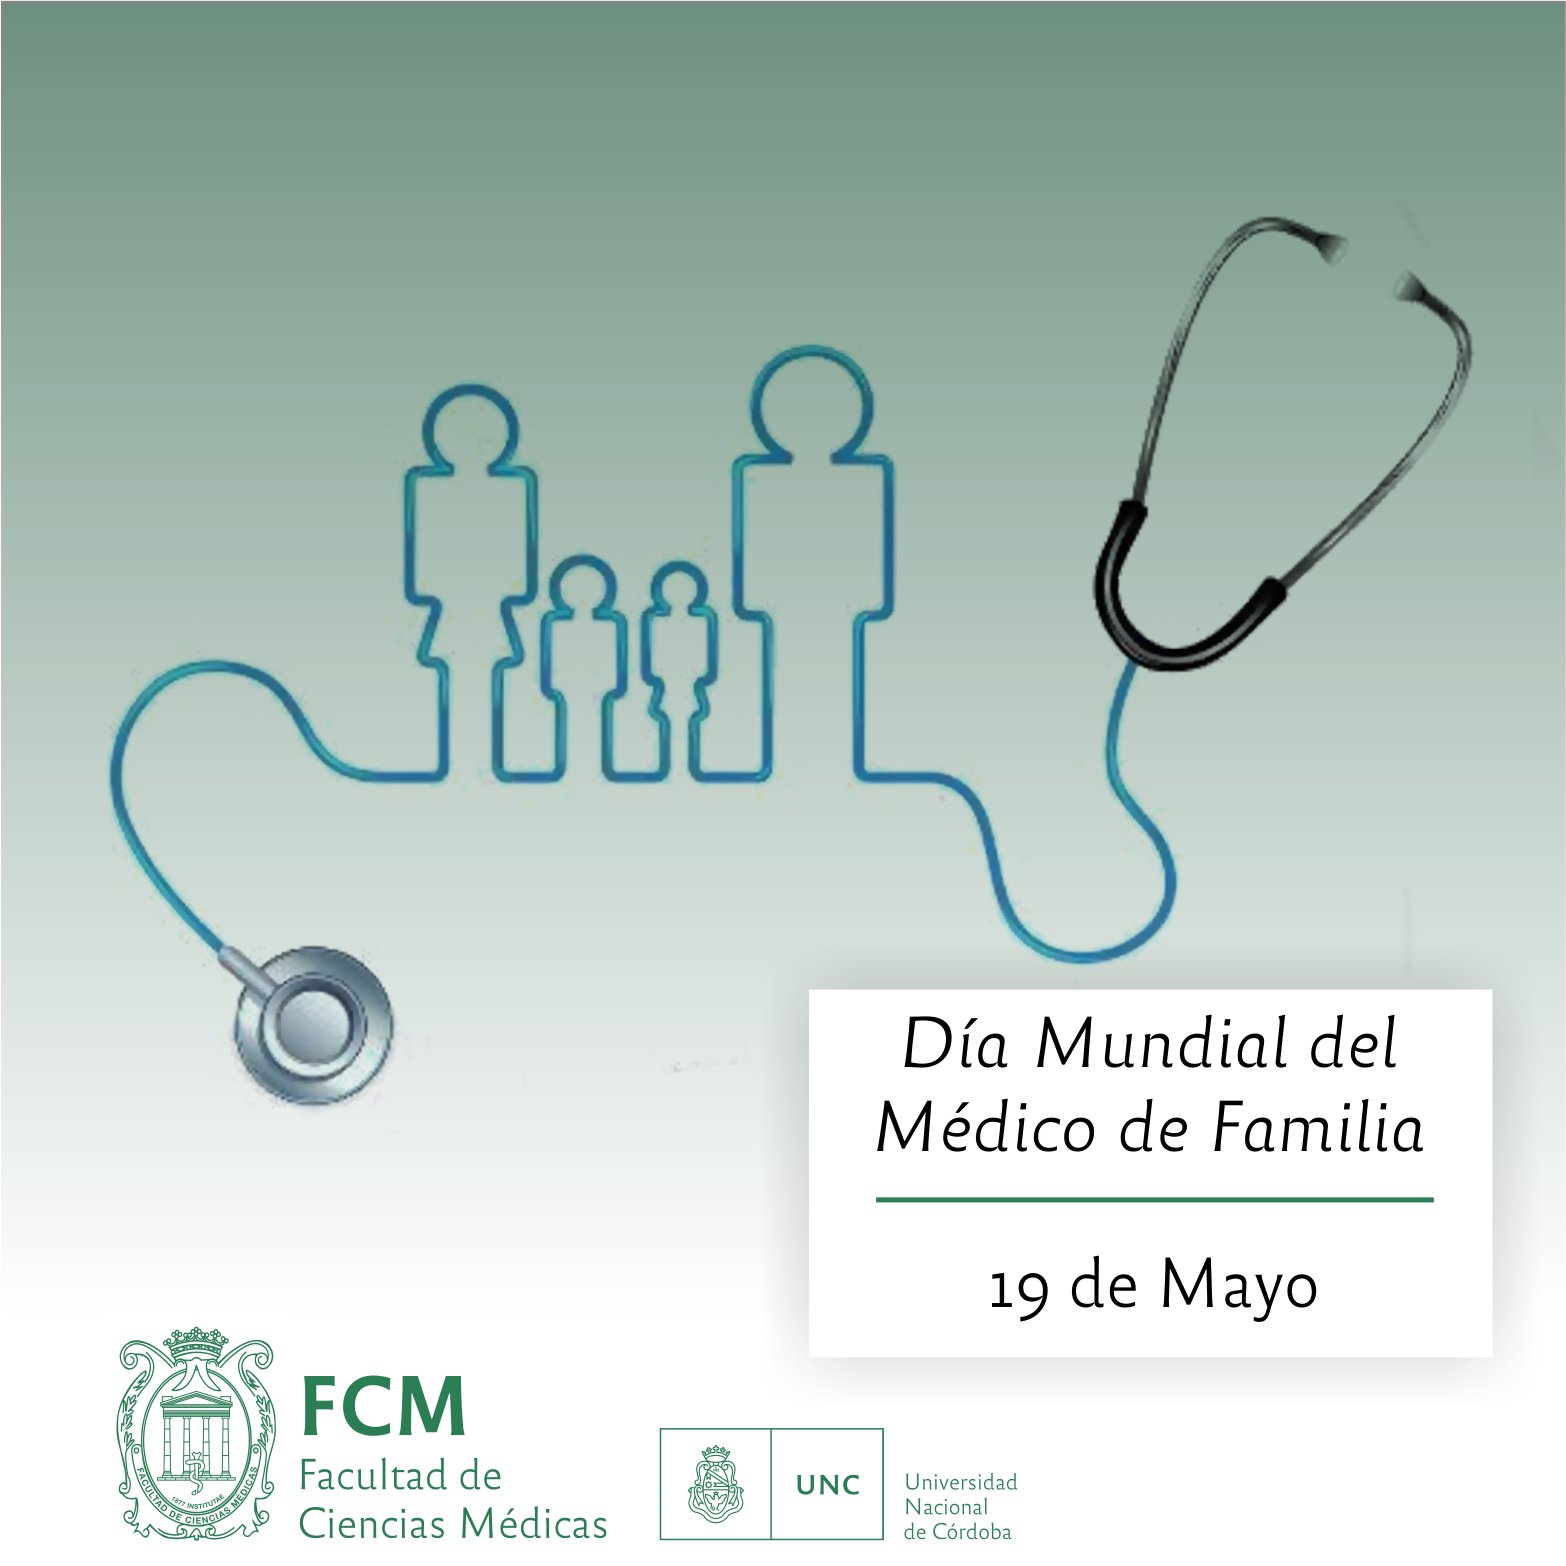 19 de mayo: “Día Mundial del Médico de Familia” – Facultad de Ciencias